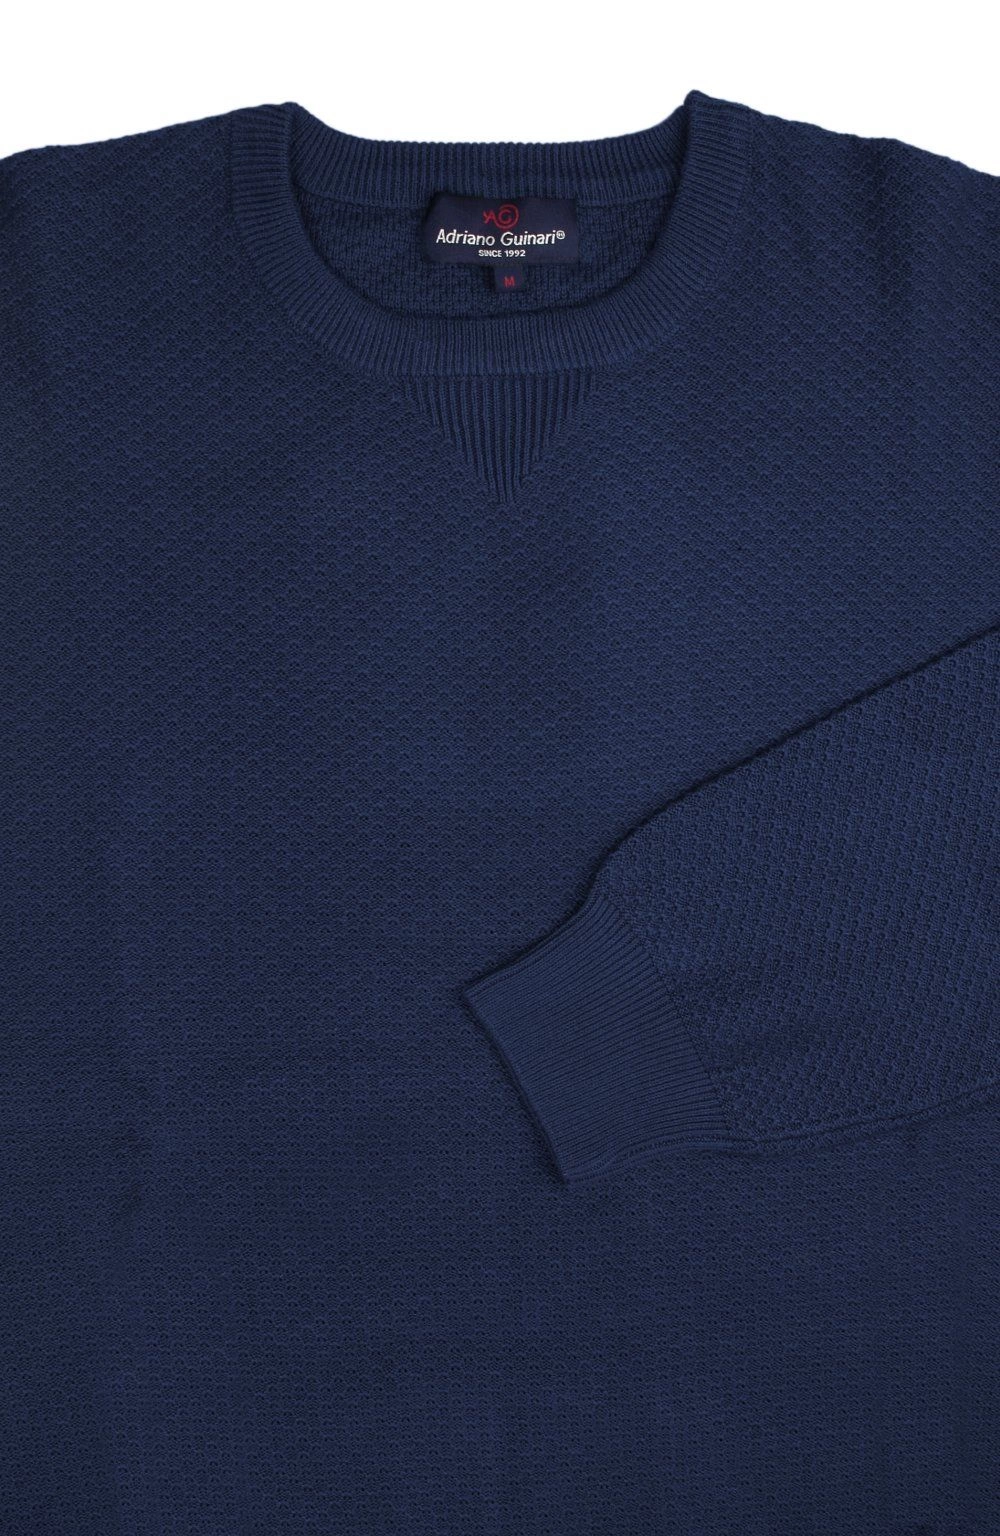 Bawełniany, Męski Sweter z Delikatną Fakturą Materiału - Adriano Guinari - Ciemnoniebieski